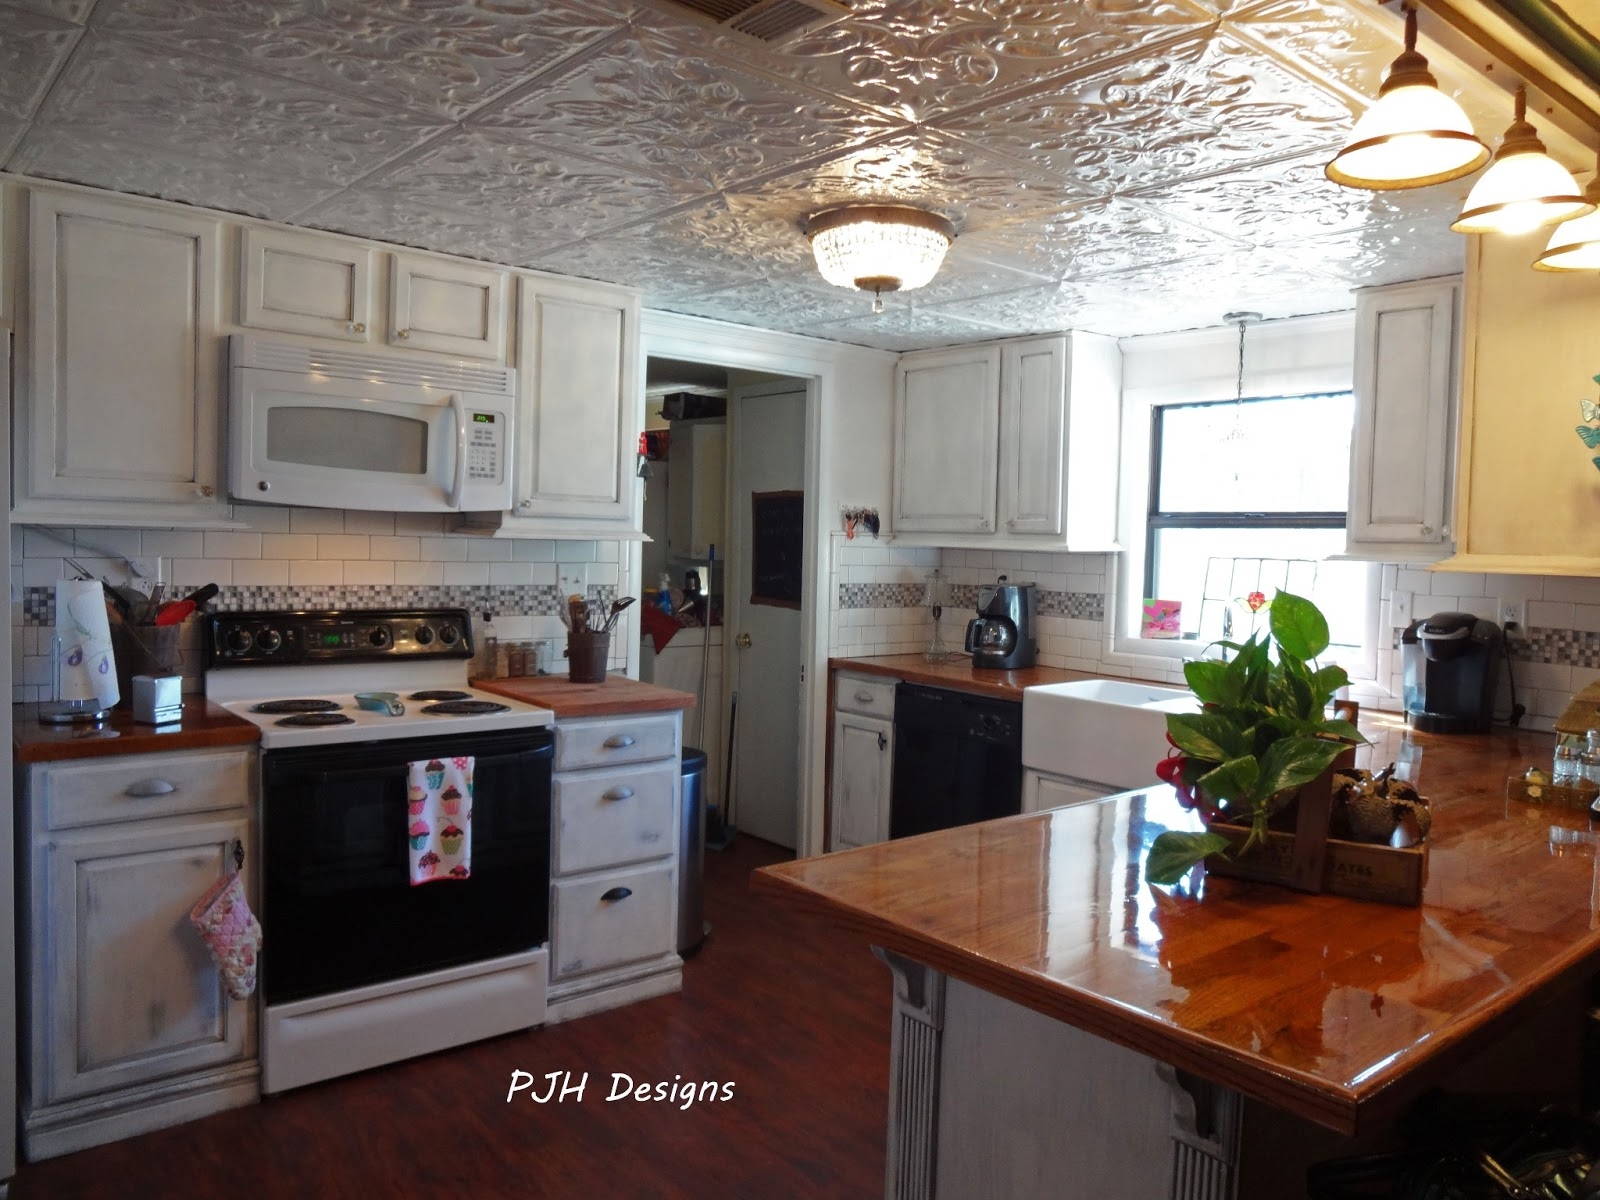 Tin Ceiling Tiles Kitchen Tin Ceiling Tiles Kitchen ceiling inspiring interior ceiling decor ideas with american tin 1600 X 1200